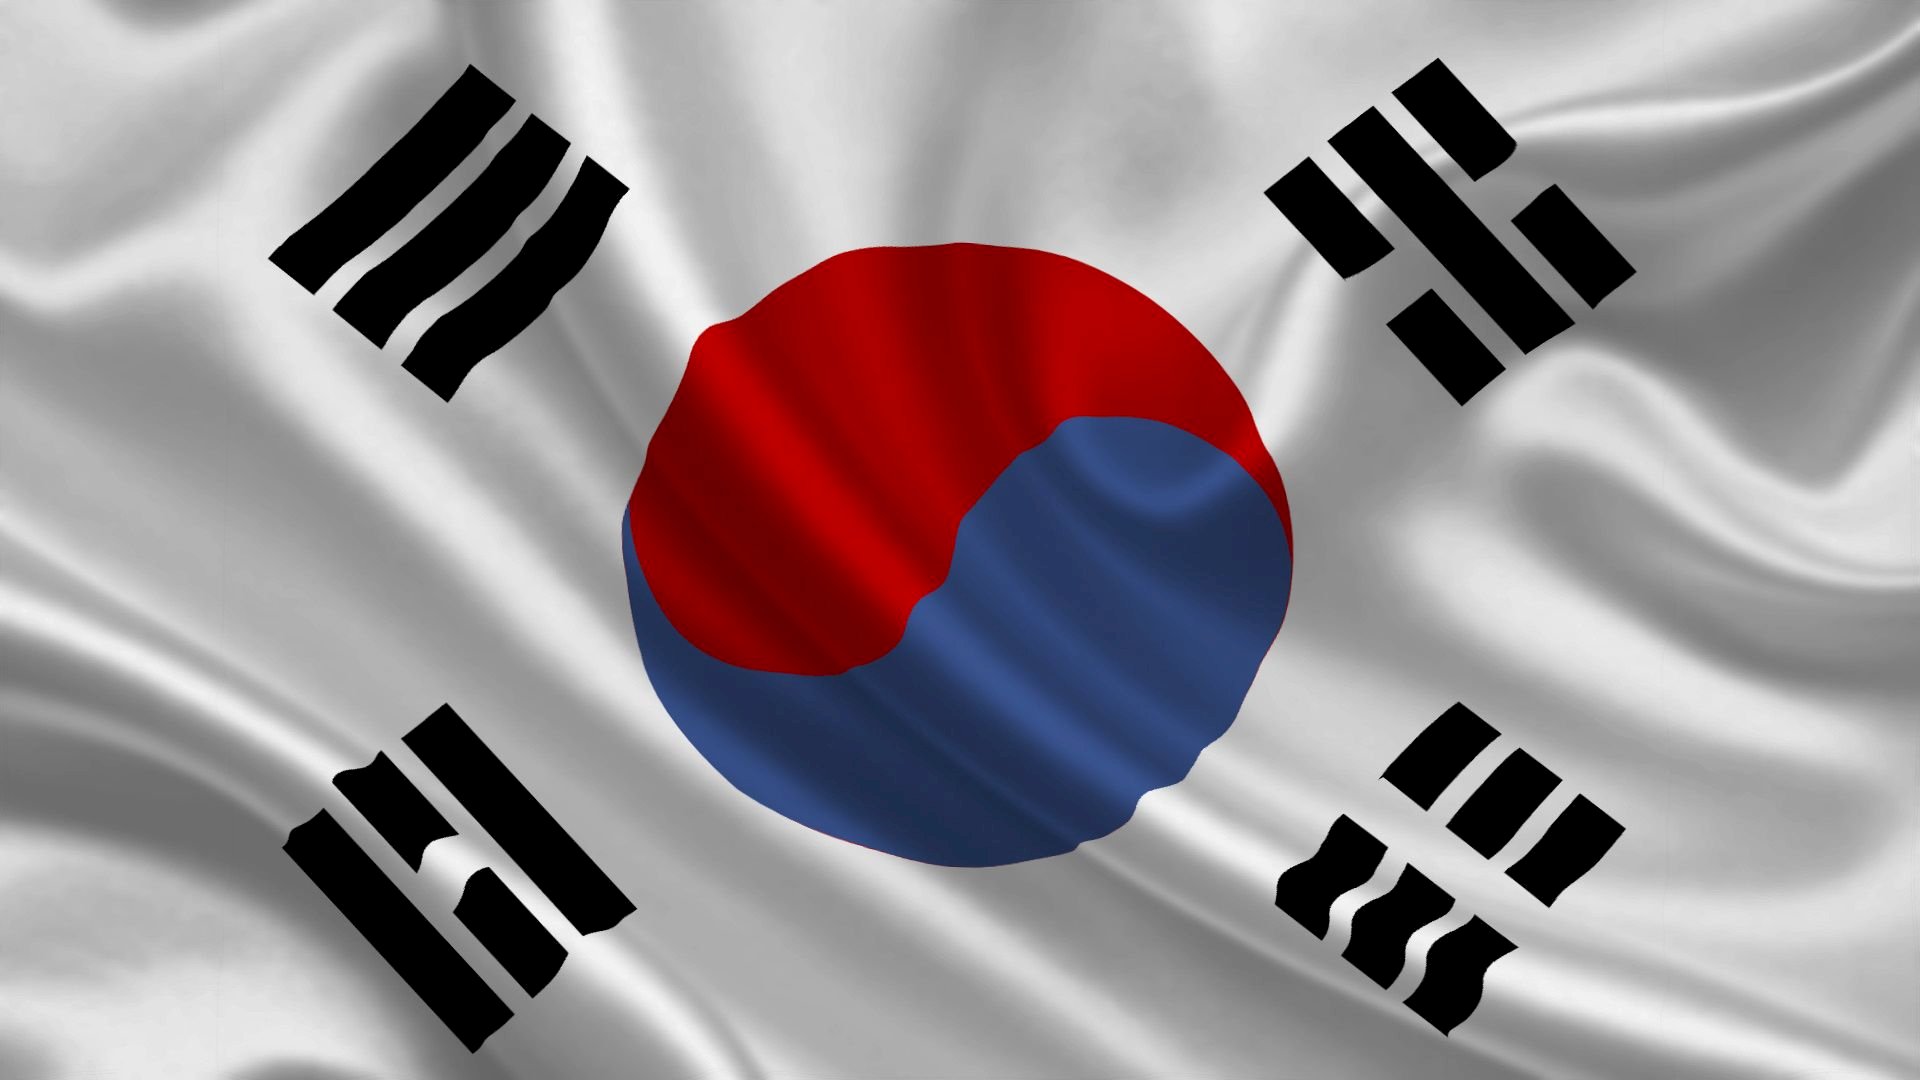 Hình ảnh lá cờ Hàn Quốc đã được thể hiện qua nhiều tác phẩm nghệ thuật, từ những bức tranh, tác phẩm điêu khắc cho đến lĩnh vực âm nhạc và điện ảnh. Hãy khám phá những hình ảnh đẹp và ý nghĩa của lá cờ Hàn Quốc qua các tác phẩm nghệ thuật phong phú.